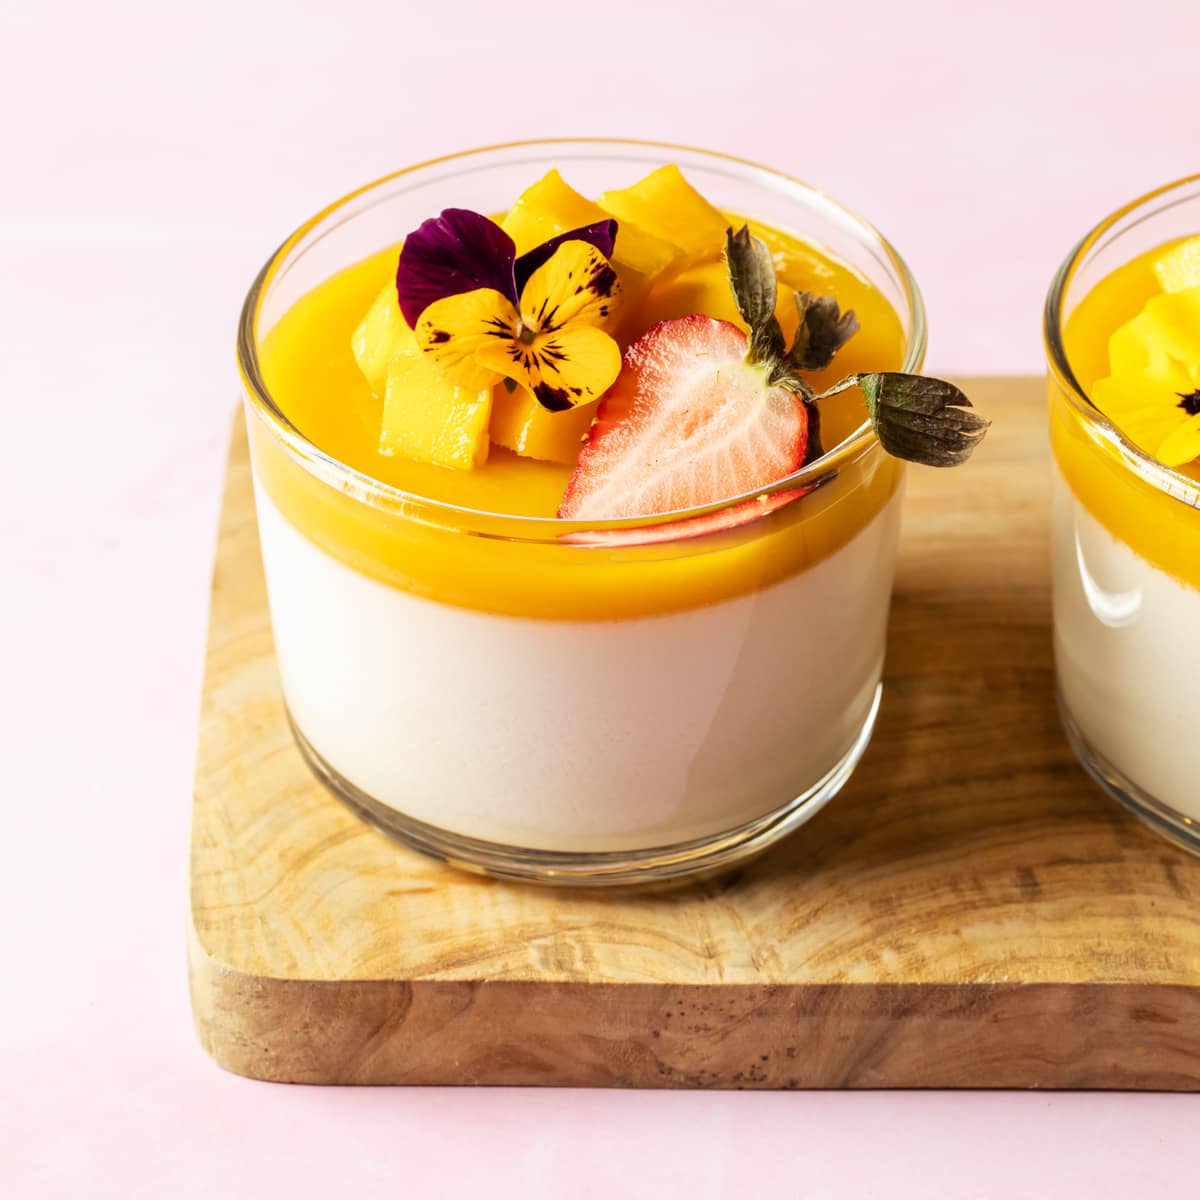 valentines day desserts - mango panna cotta